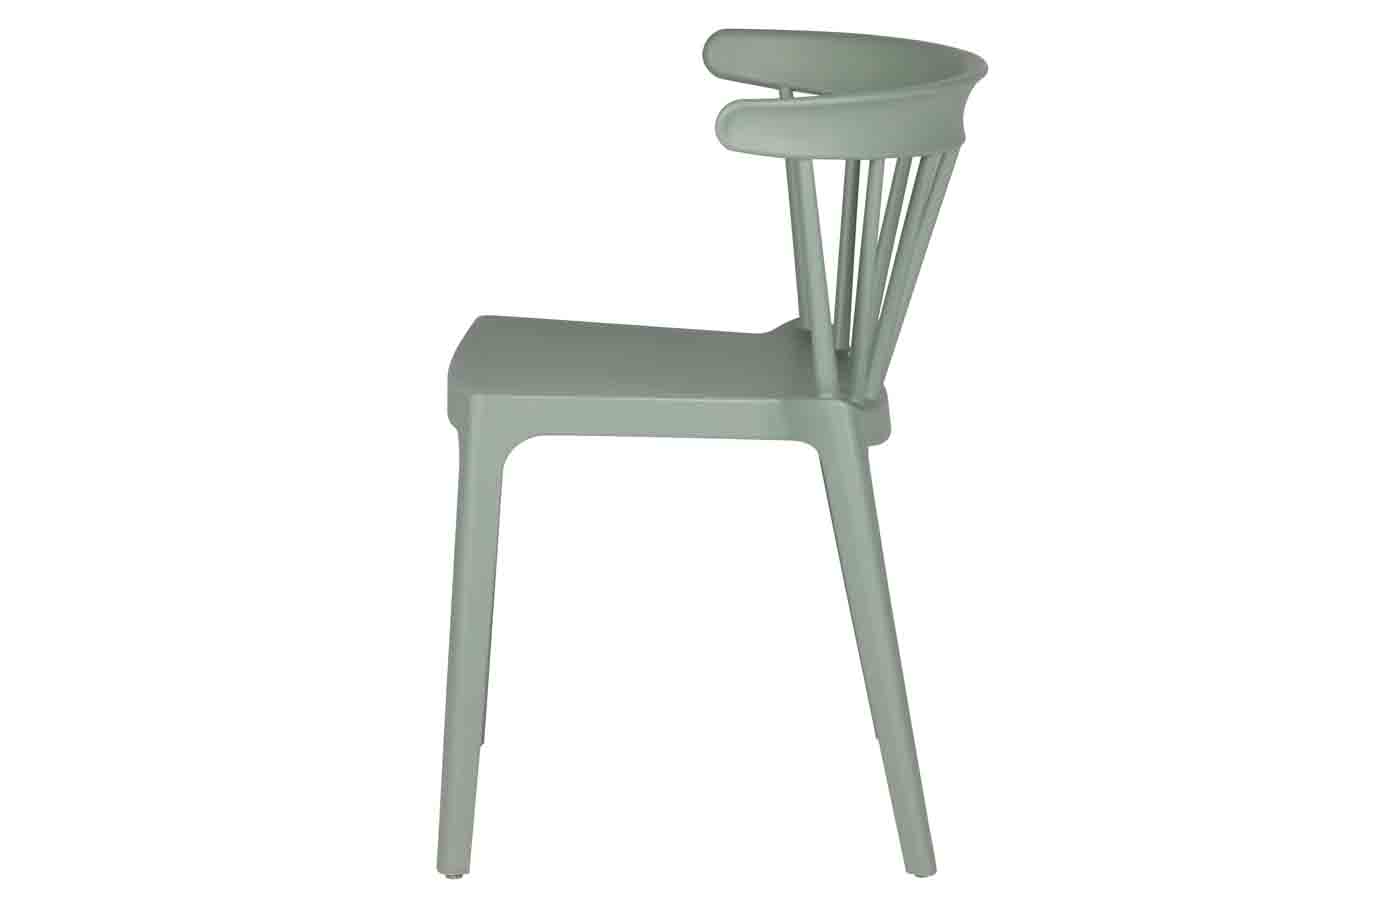 Cooler Stapelstuhl Bliss, gefertigt aus Kunststoff, auch für den Außenbereich geeignet